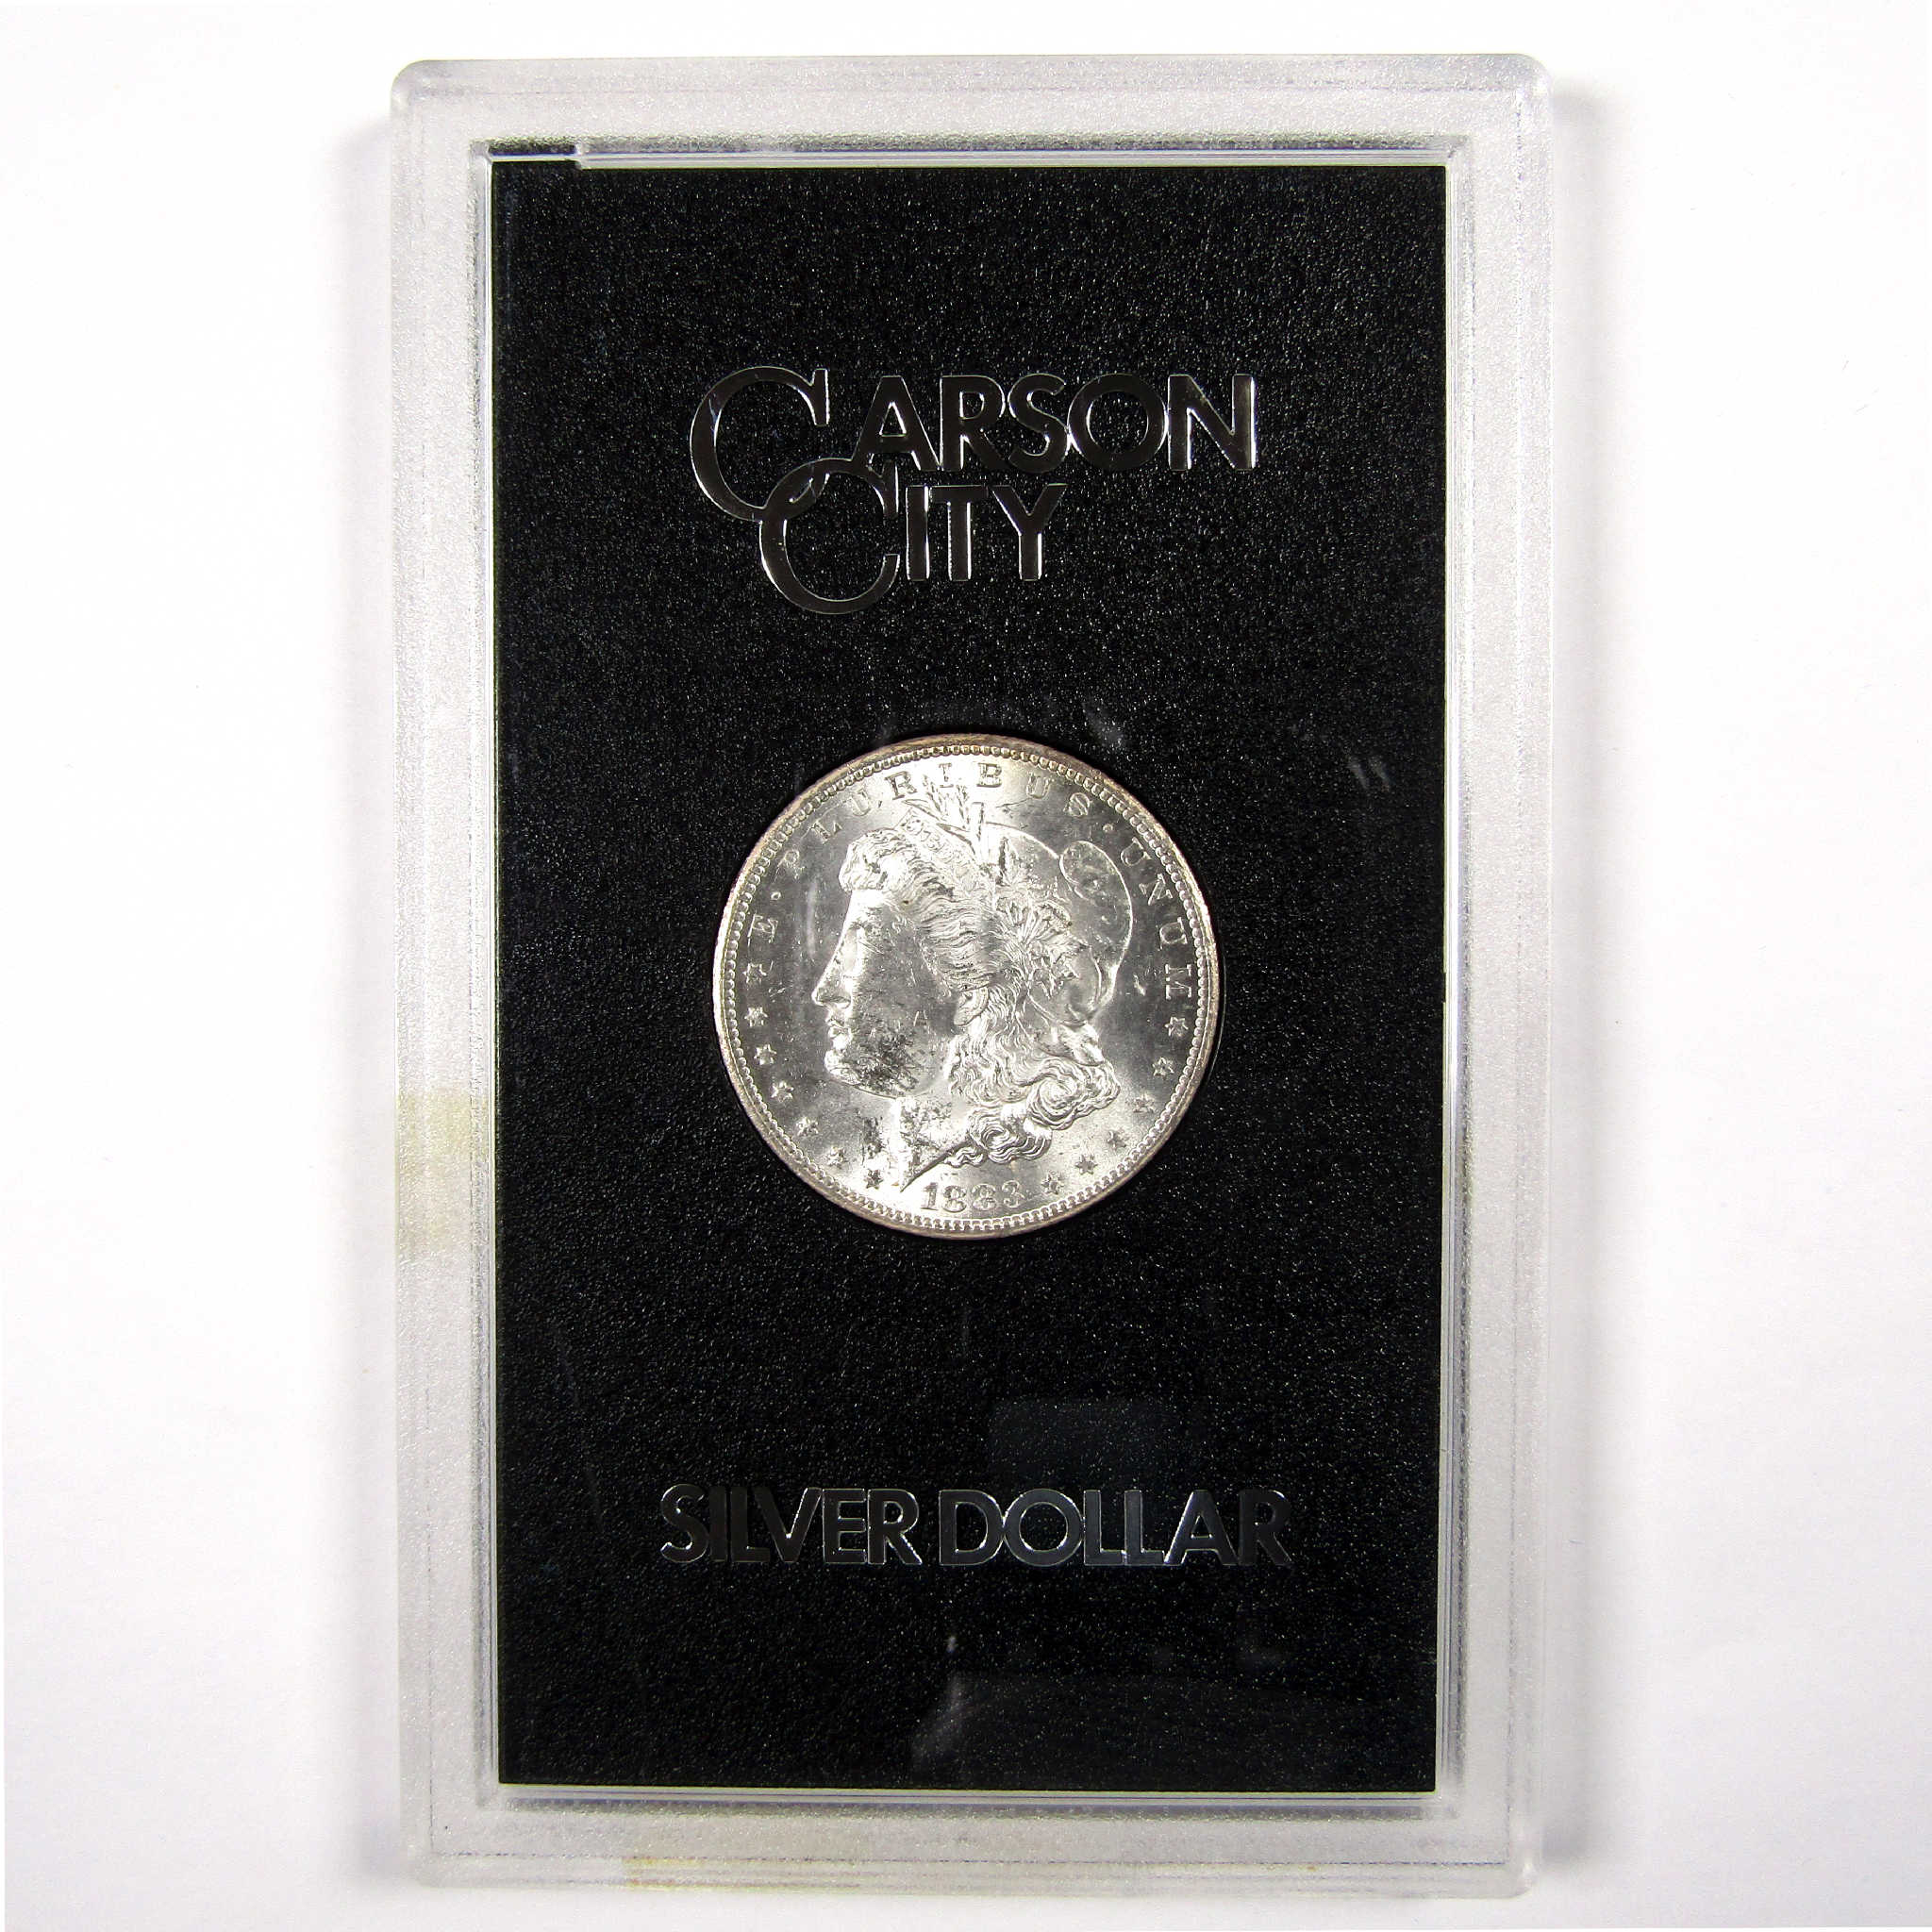 1883 CC GSA Morgan Dollar BU Uncirculated Silver $1 Coin SKU:I11498 - Morgan coin - Morgan silver dollar - Morgan silver dollar for sale - Profile Coins &amp; Collectibles